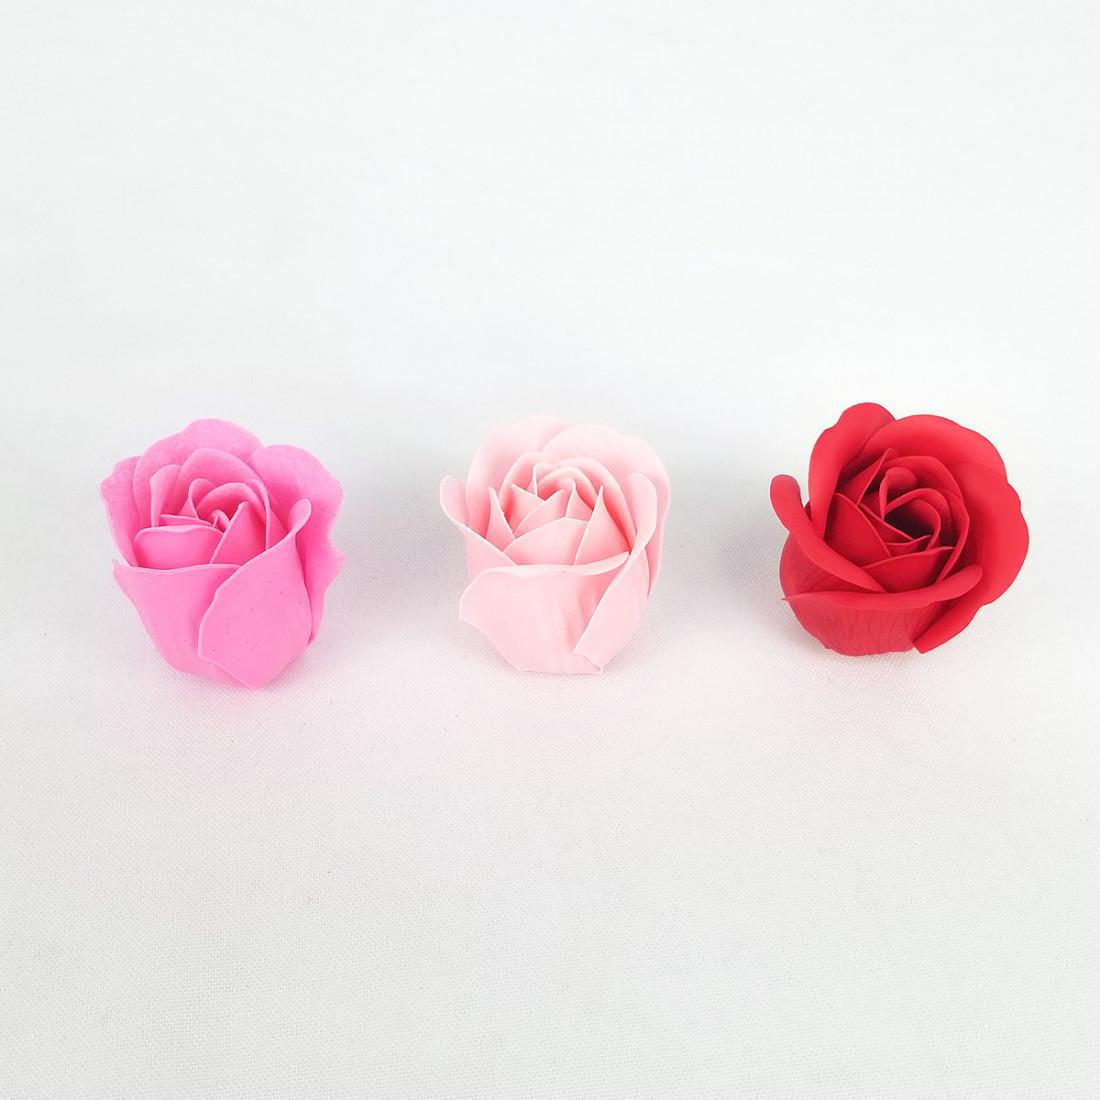 Rose Petals Soap Set